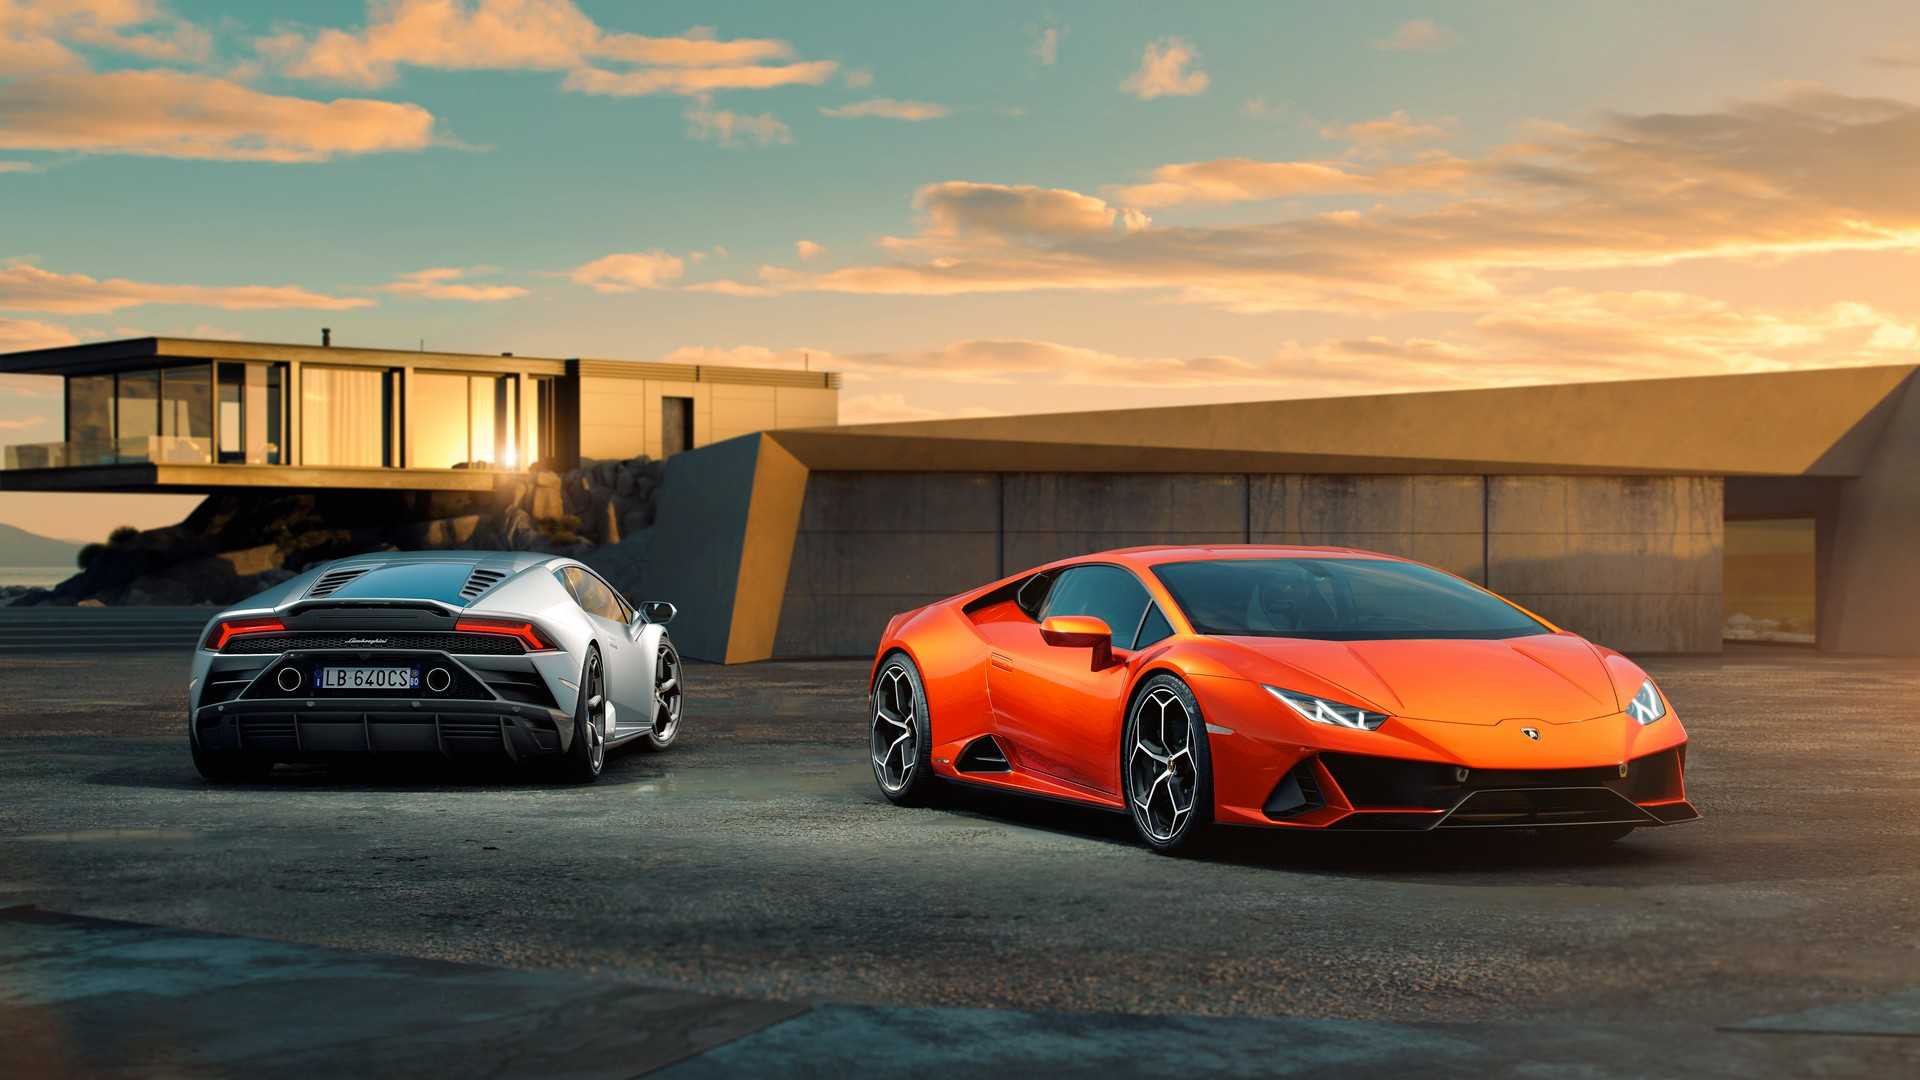 Những hình ảnh Lamborghini Huracan EVO sẽ làm bạn phải trầm trồ trước sự hoàn hảo về thiết kế và công nghệ của siêu xe này. Hãy để mỗi hình nền đưa bạn đến gần hơn với sự thăng hoa và cảm nhận sức mạnh của Lamborghini Huracan EVO.